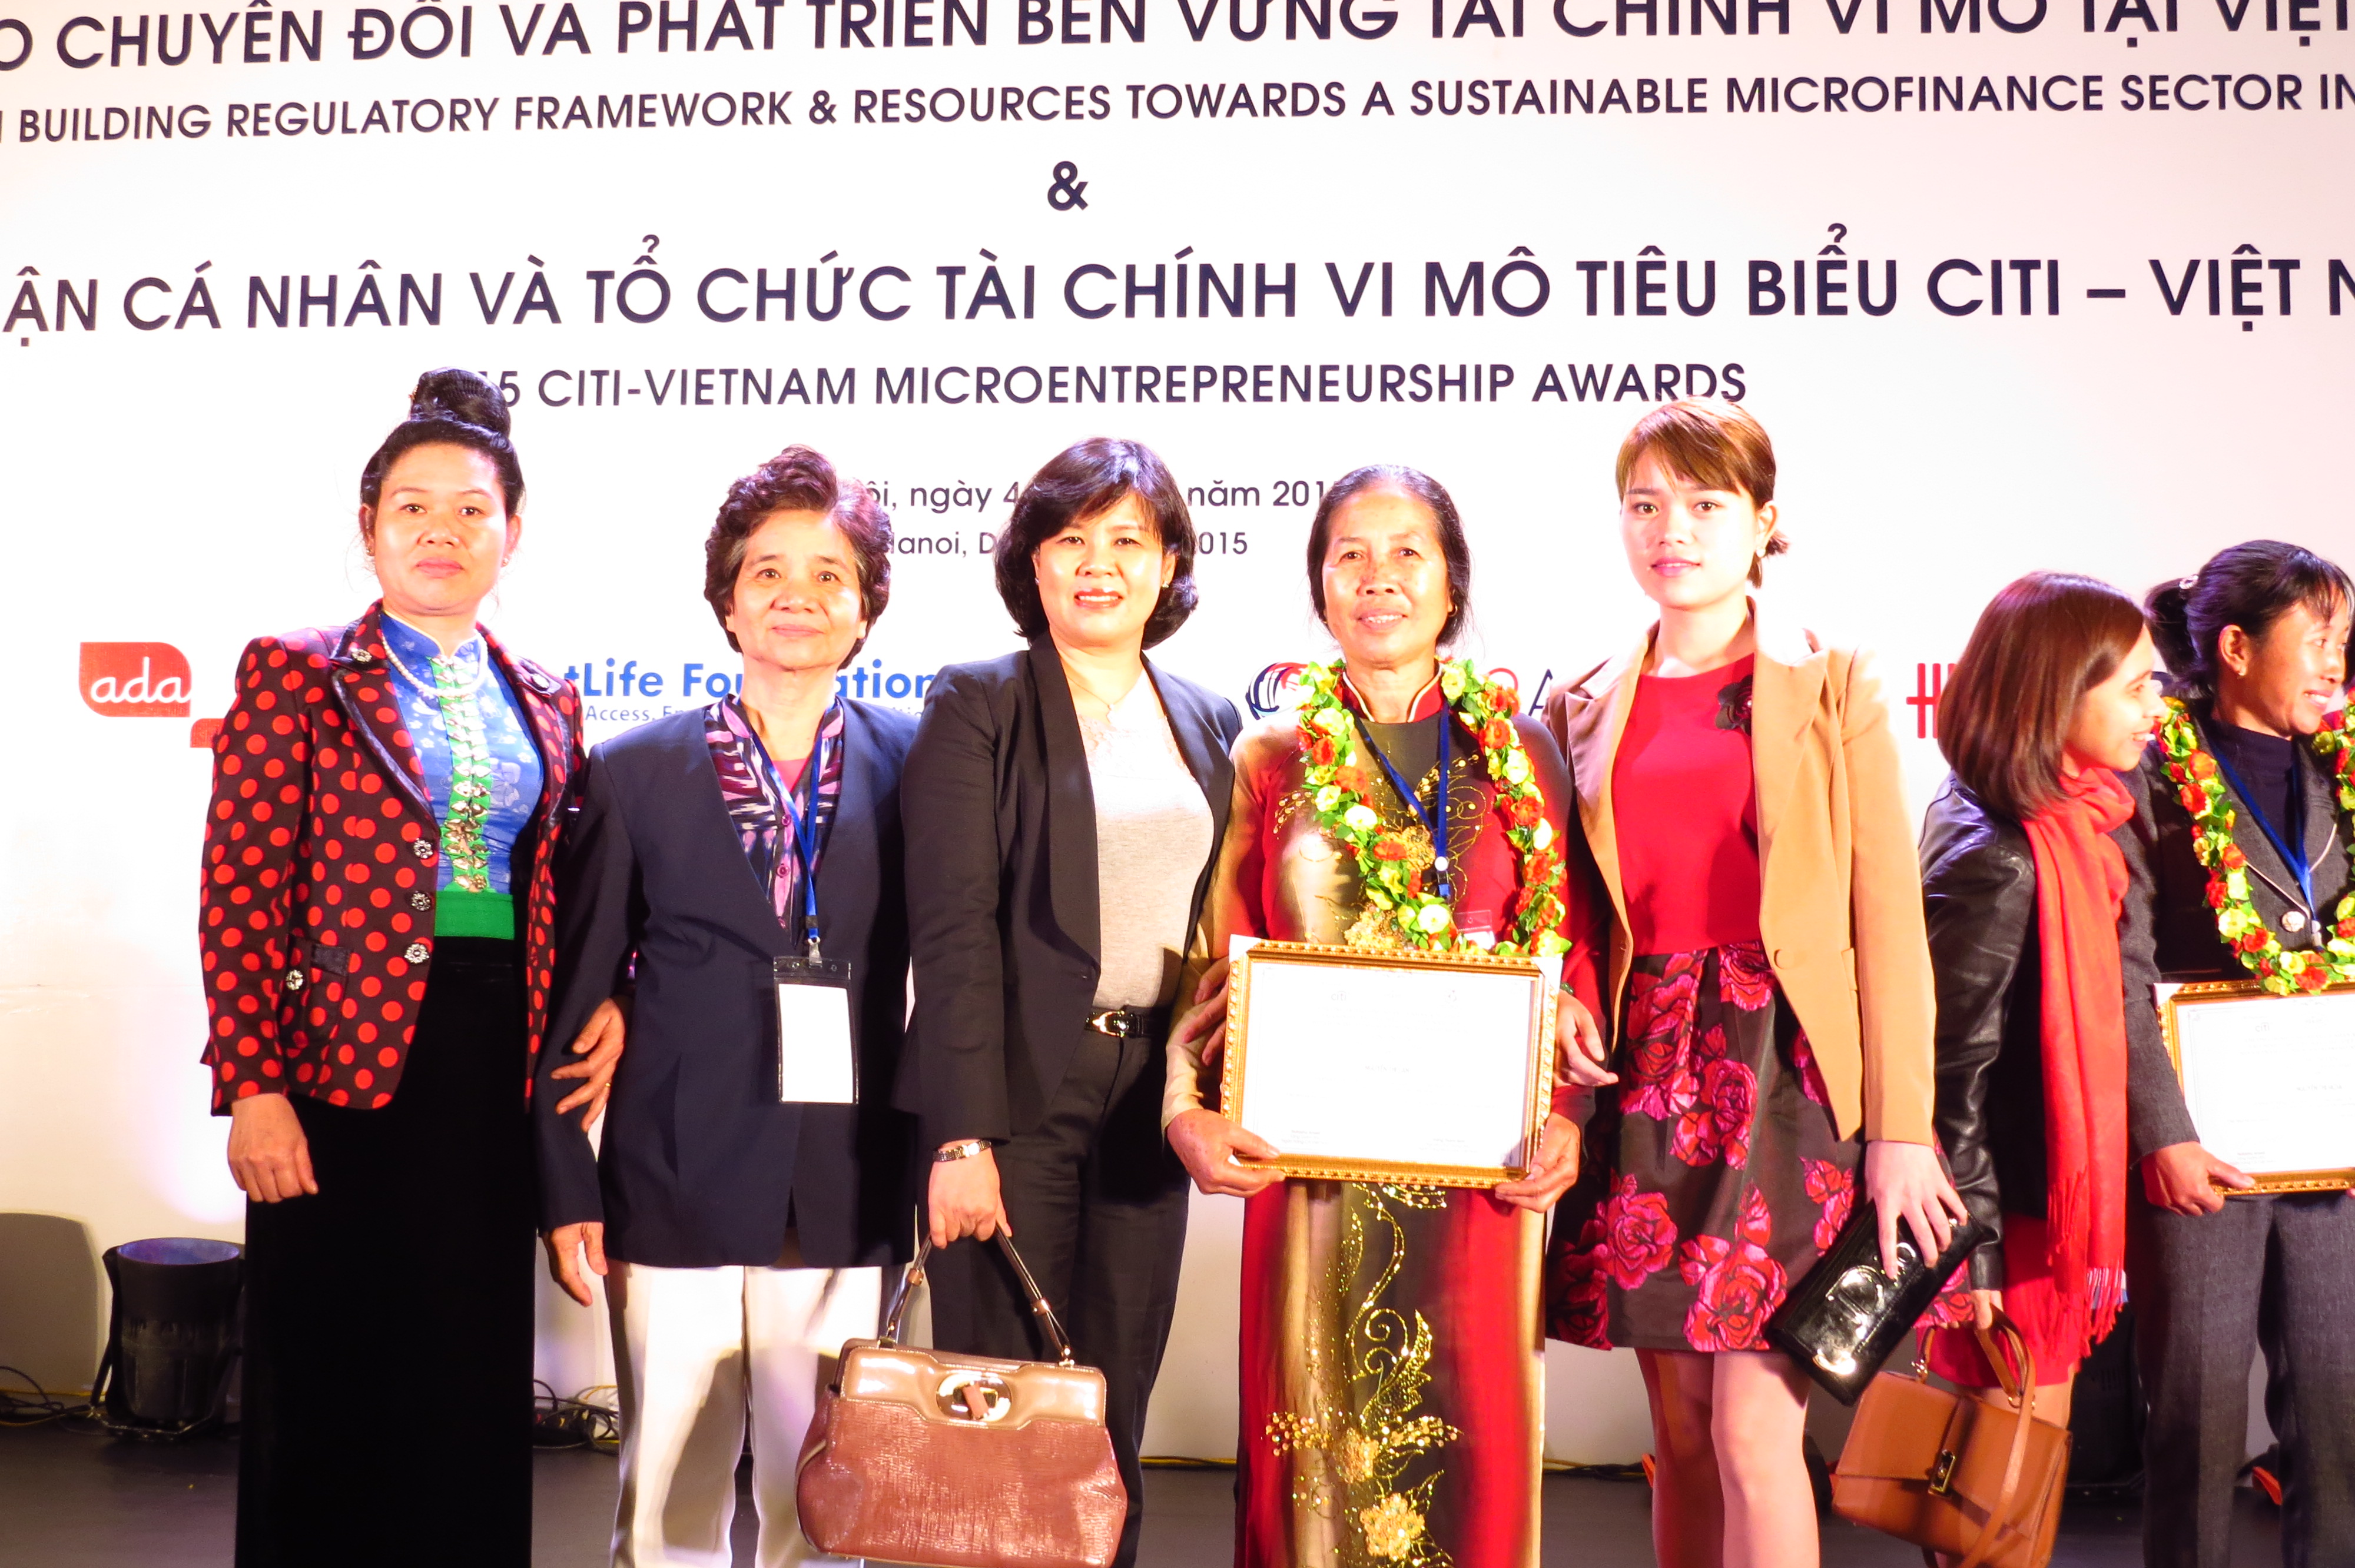 STU member won Citi Microentrepreneur Award 2015